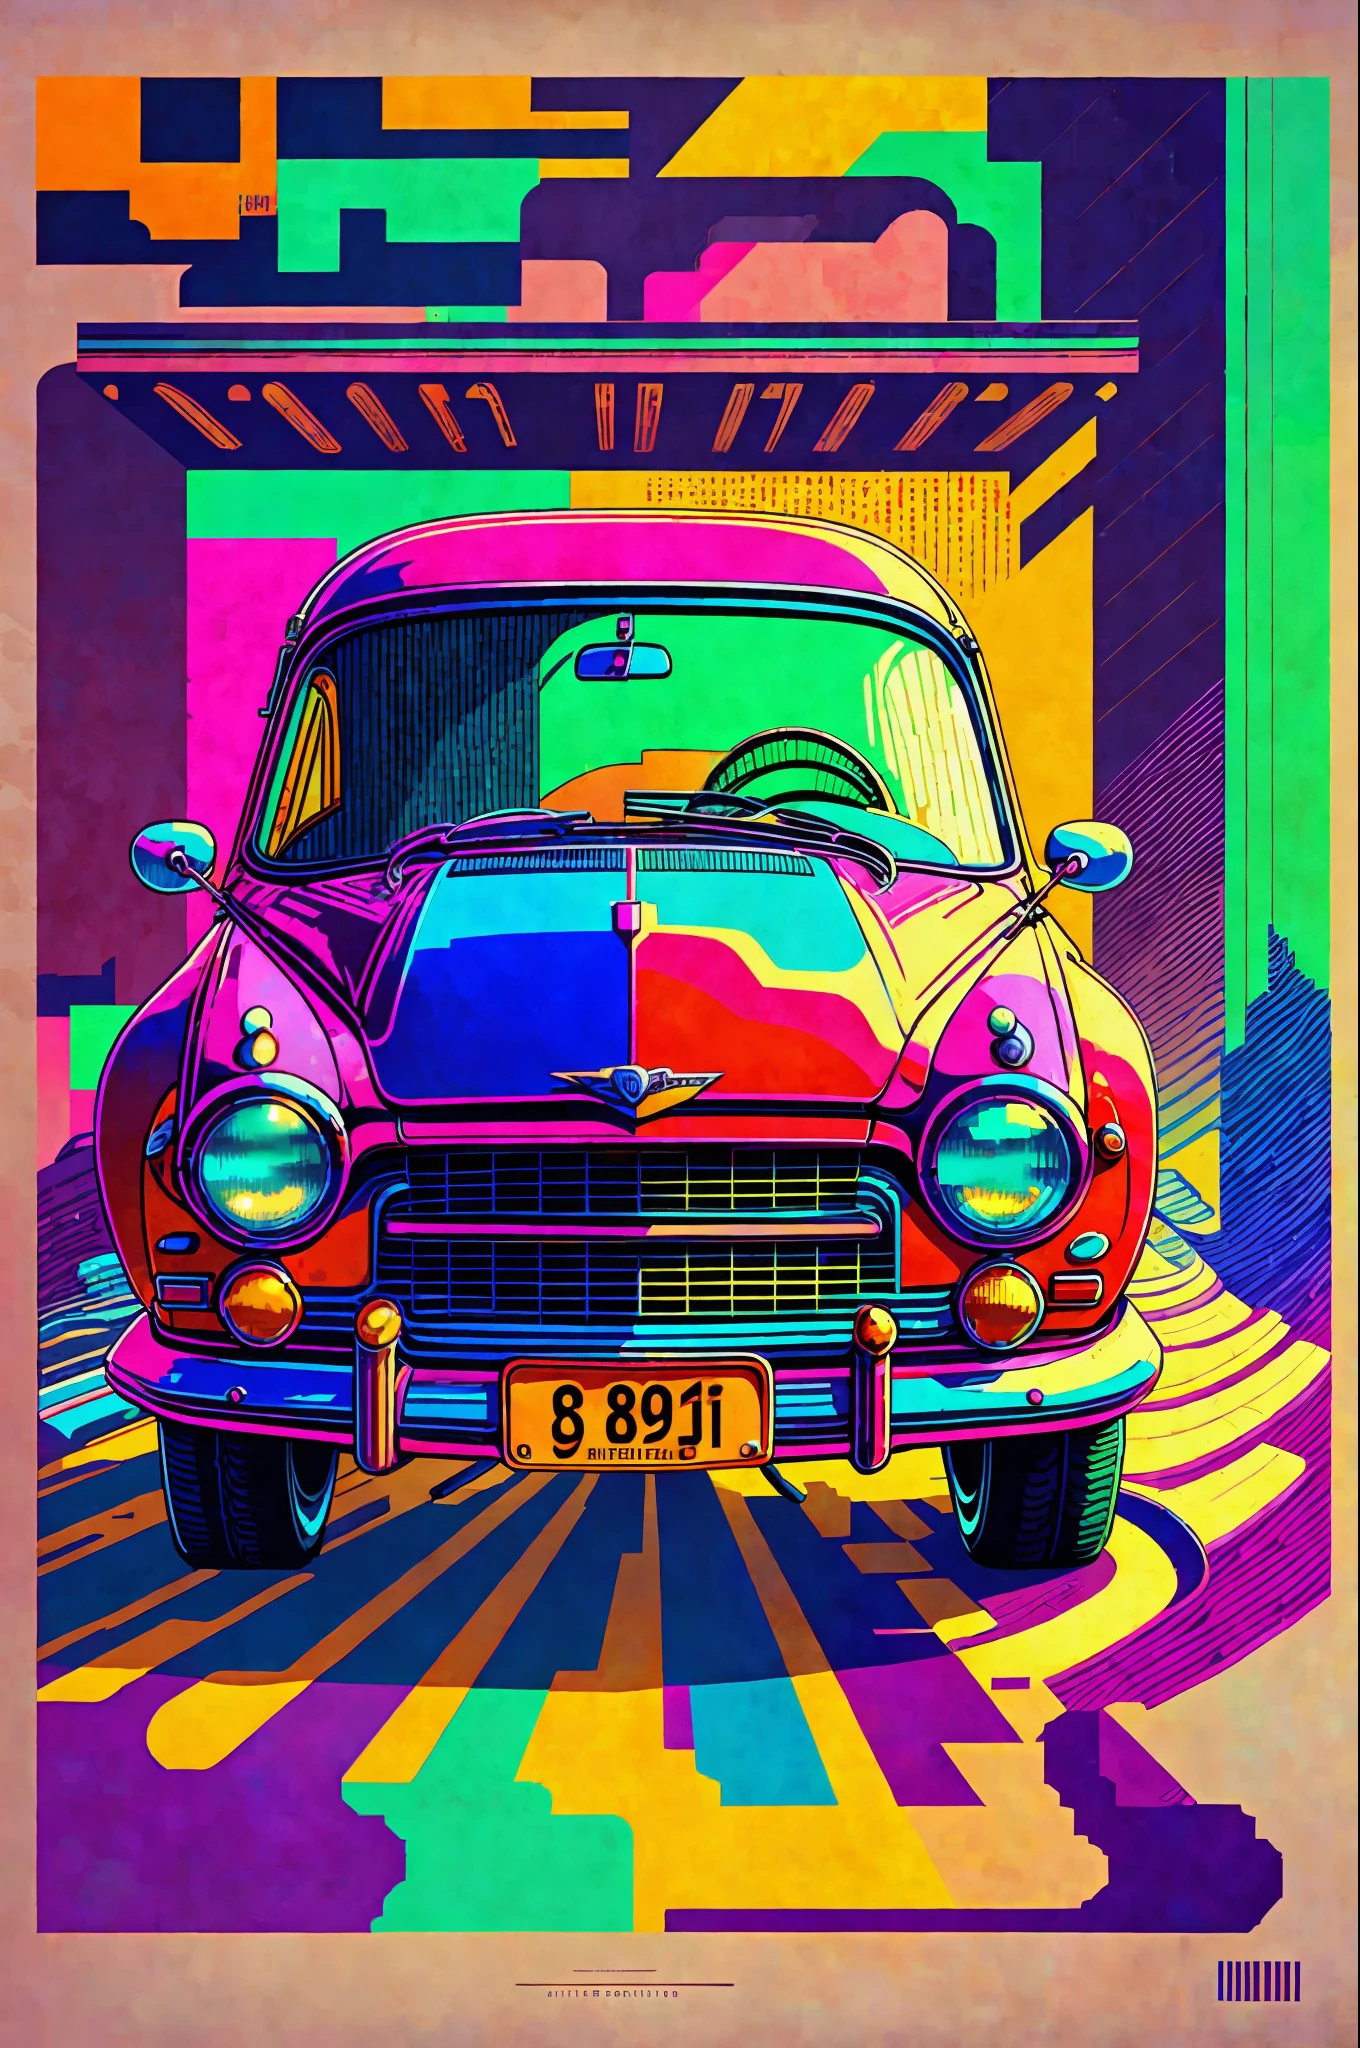 {傑作}: ピクセル 90年代 car. レトロスタイル with vibrant colors. 懐かしさ in prints. (幅: 800, 身長: 600, 方法: オイラー, 手順: 20, CFGスケール: 10, シード: 12345, 高級な: 2)
タグ: 傑作, 車, ピクセル, 90年代, レトロスタイル, 鮮やかな色彩, 懐かしさ. --auto --s2